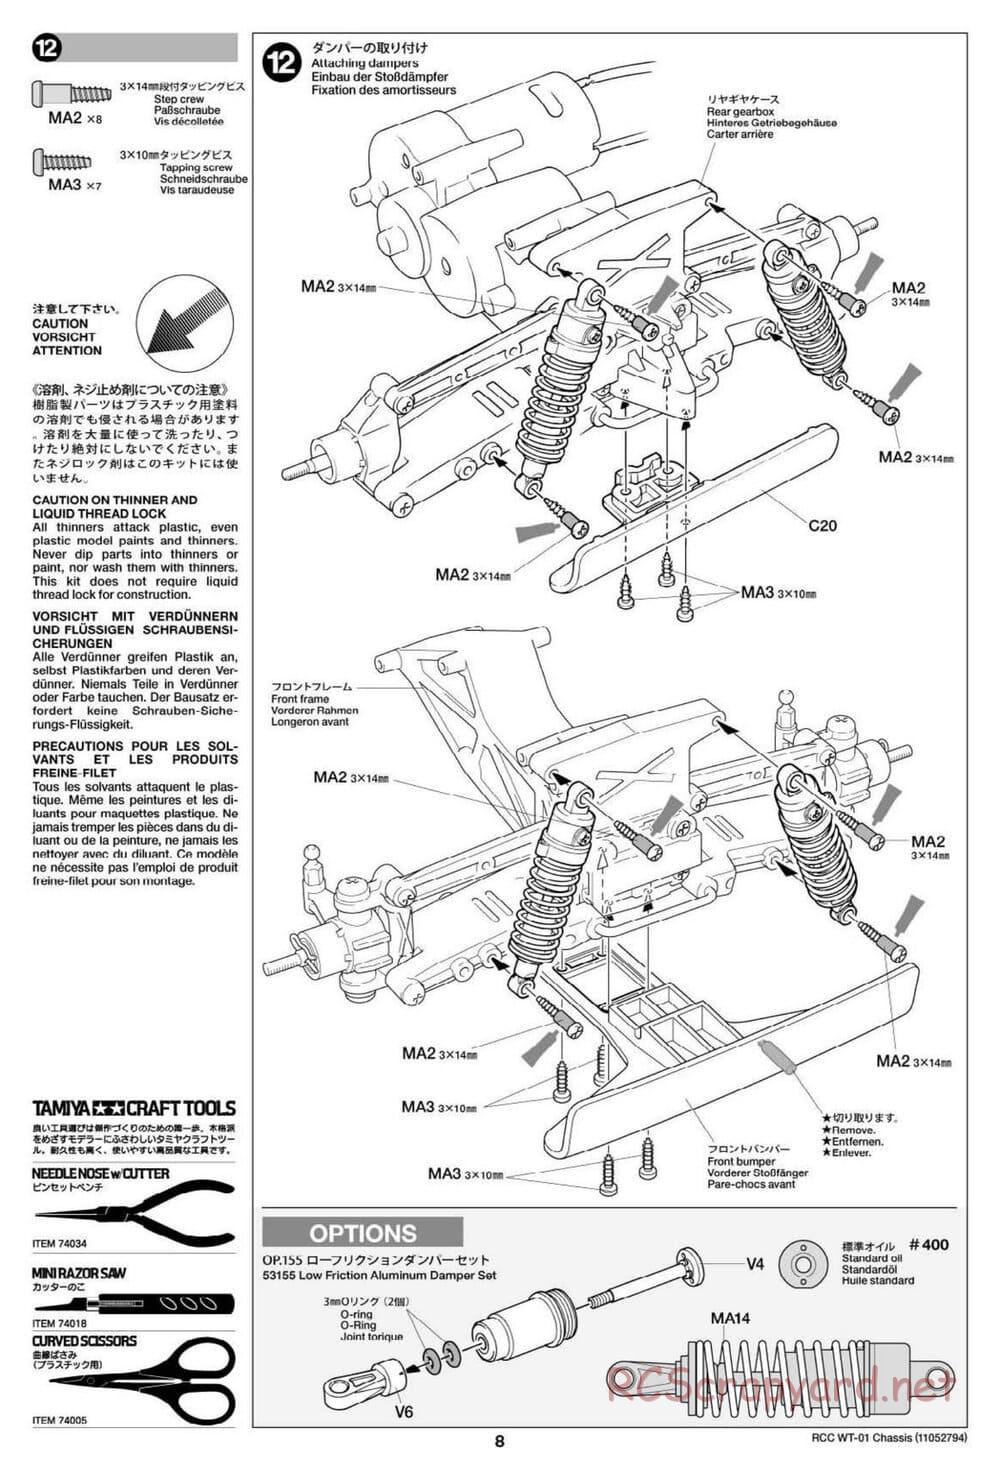 Tamiya - WT-01 Chassis - Manual - Page 8